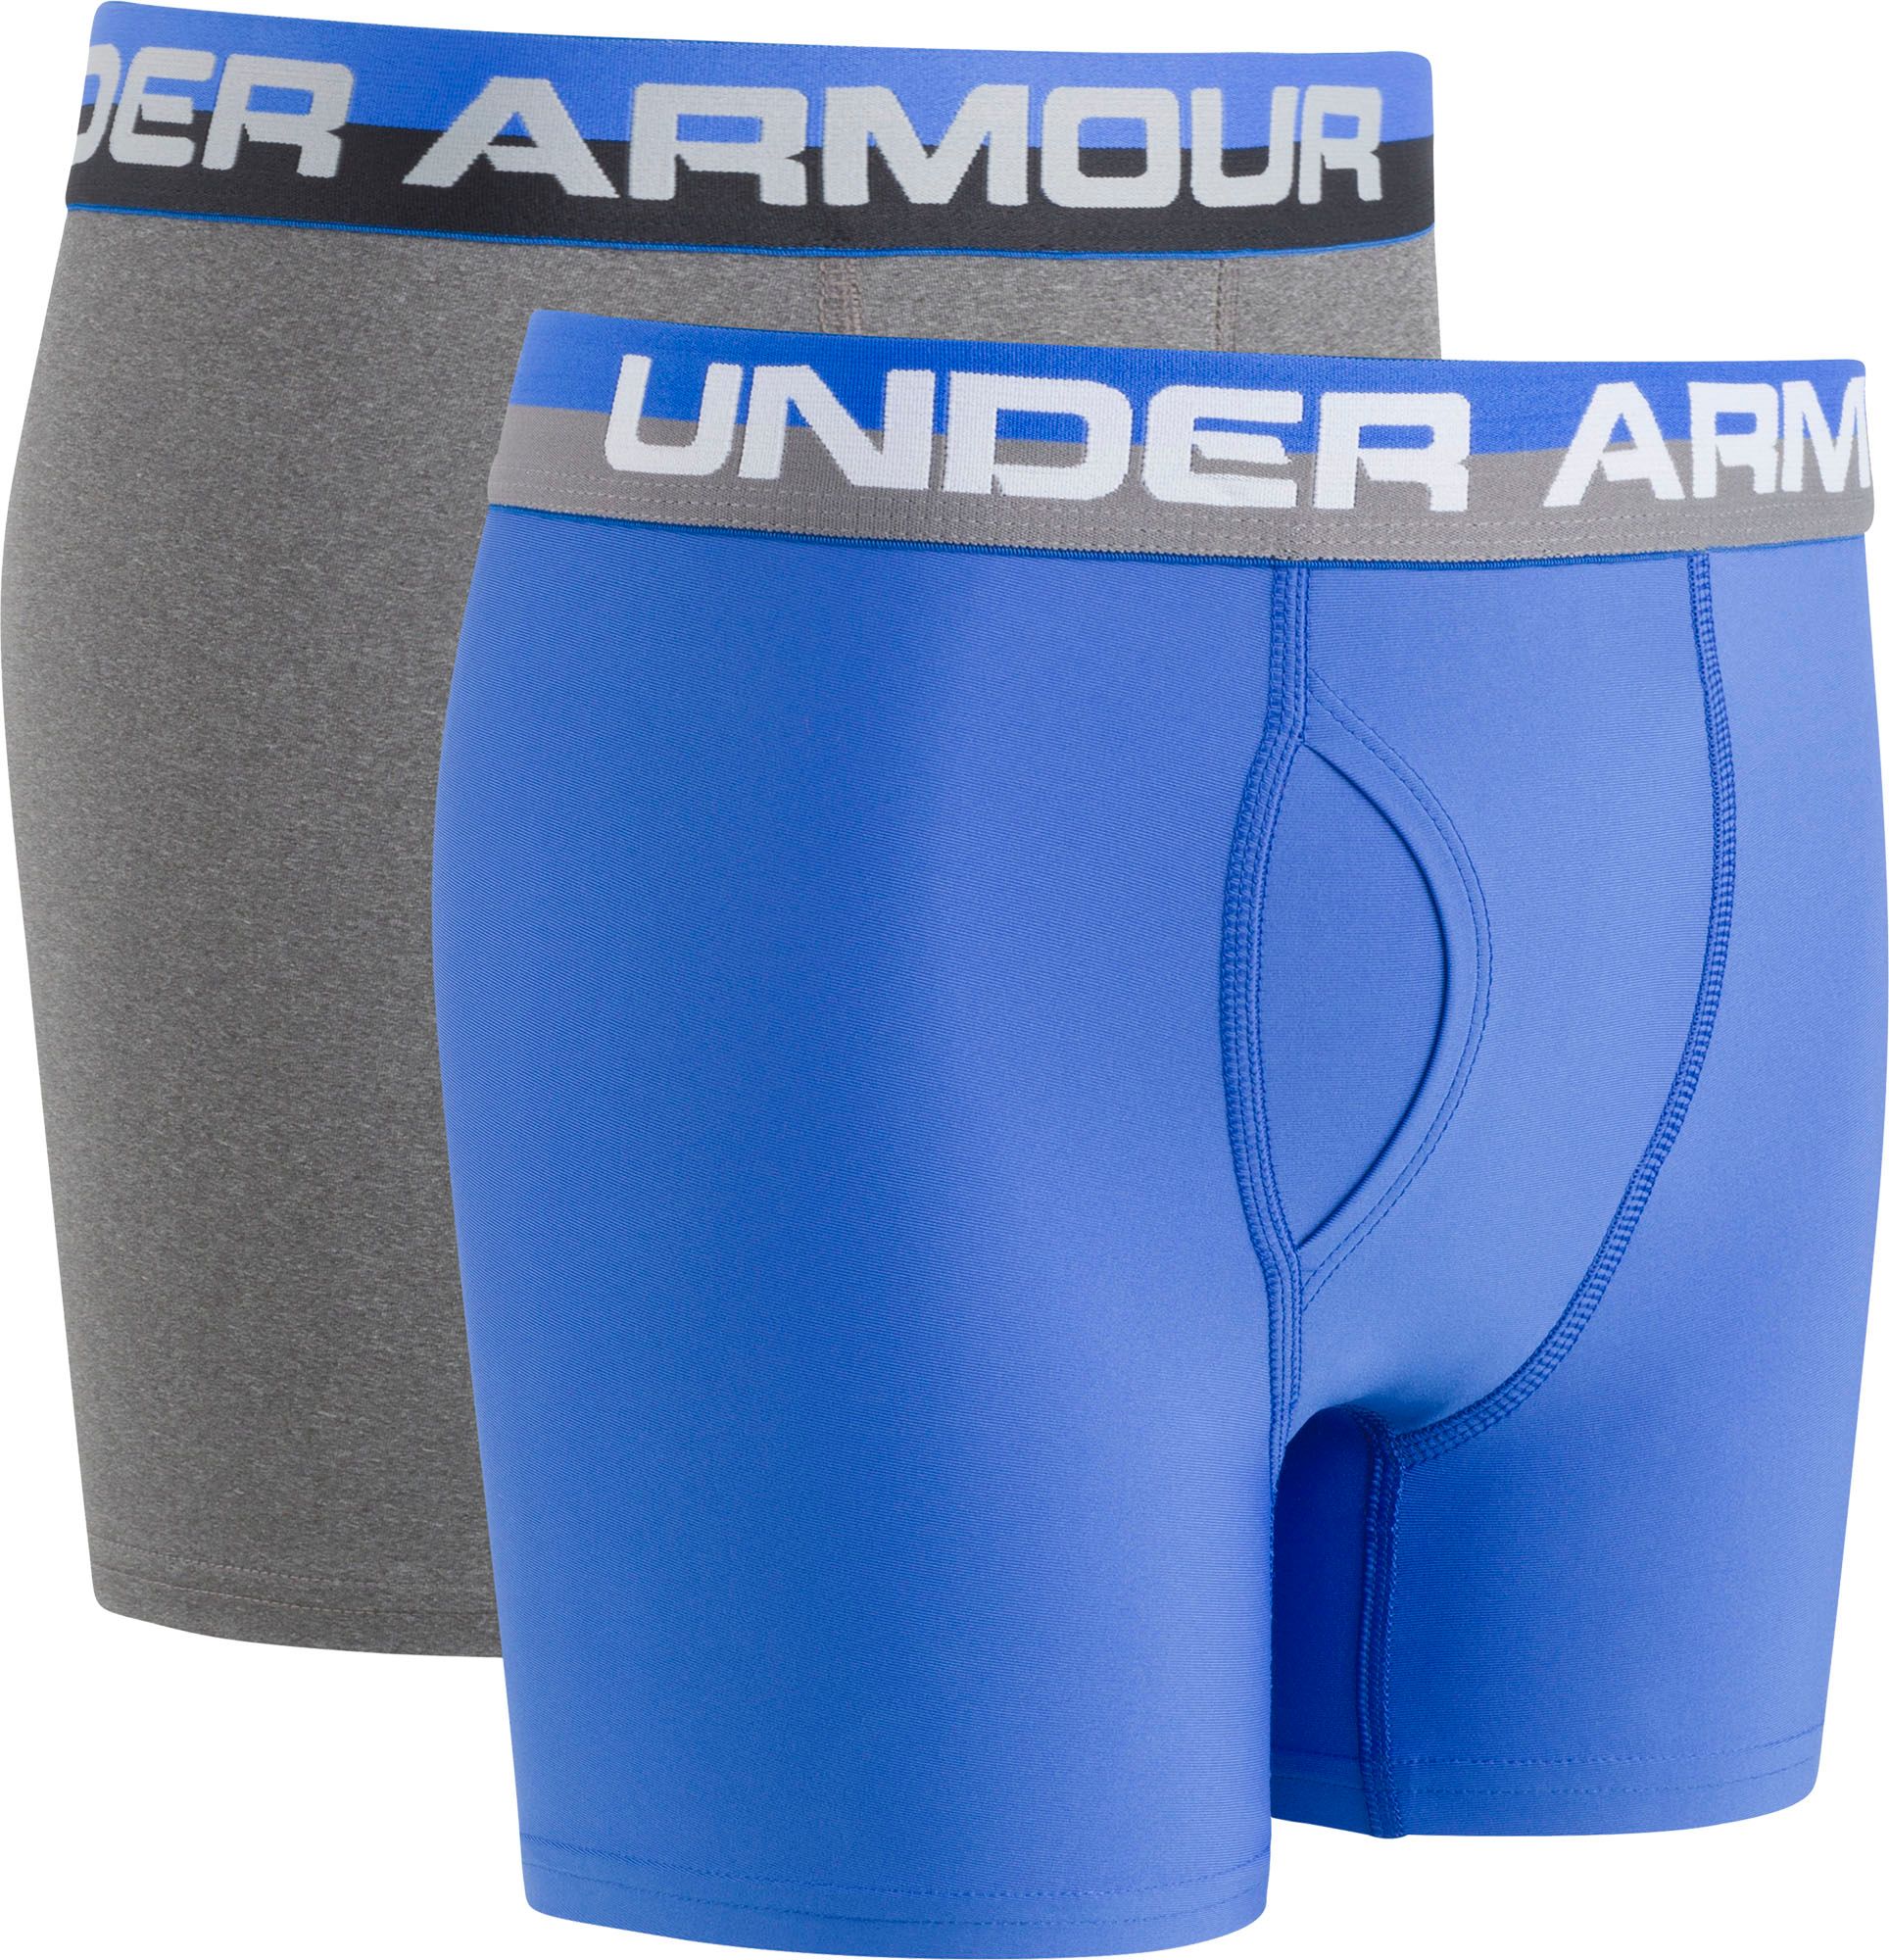 under armour boxer brief underwear